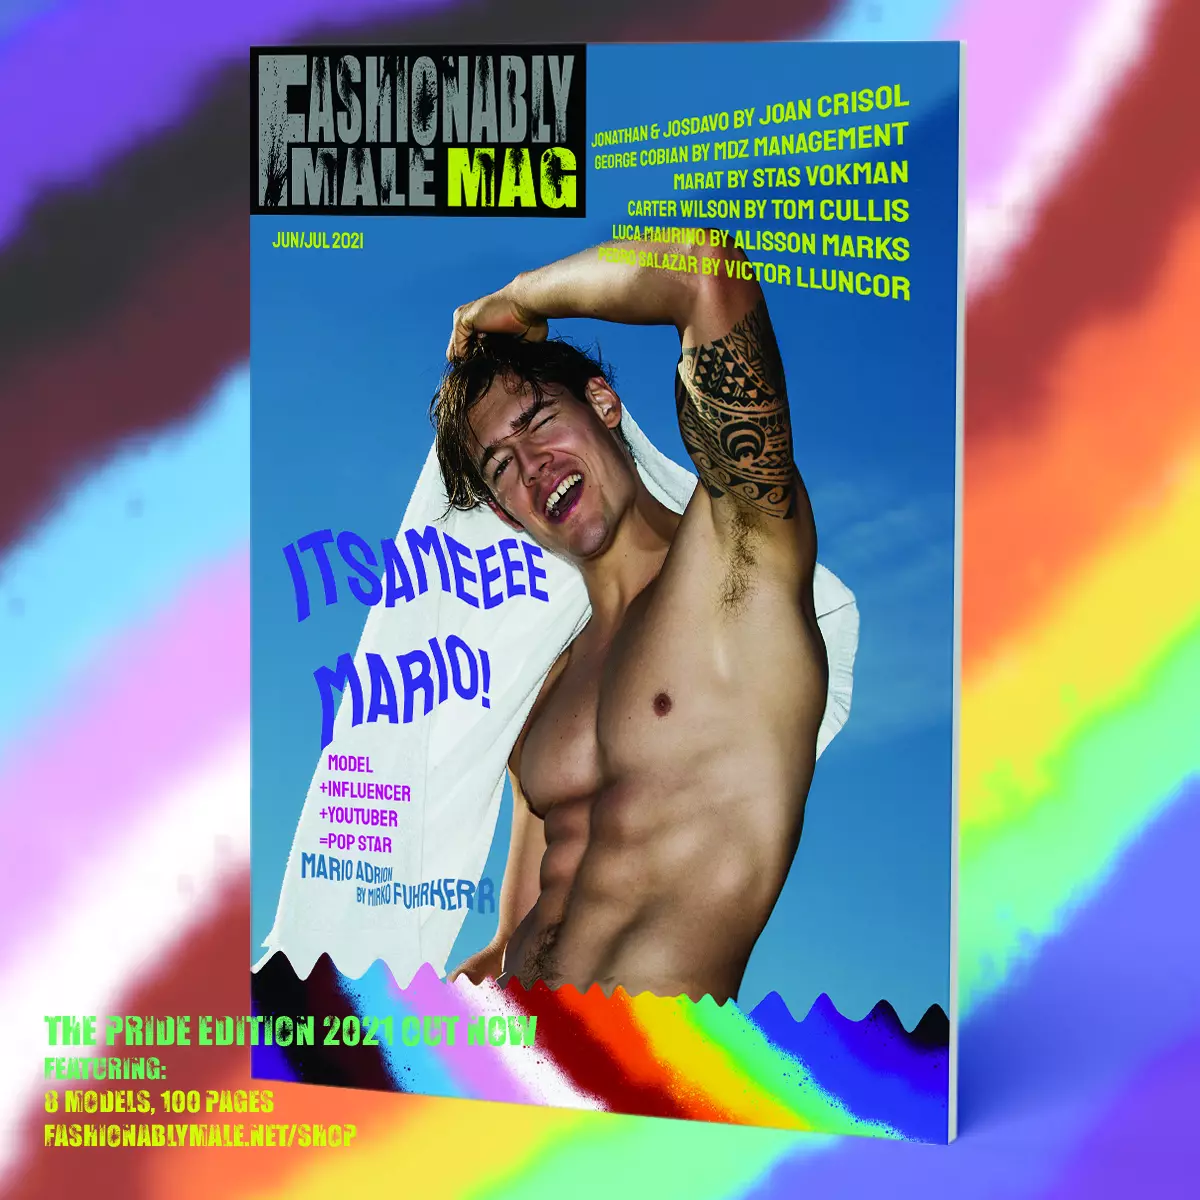 Produit de couverture de Mario Adrion pour Fashionably Male Mag Pride Edition 2021